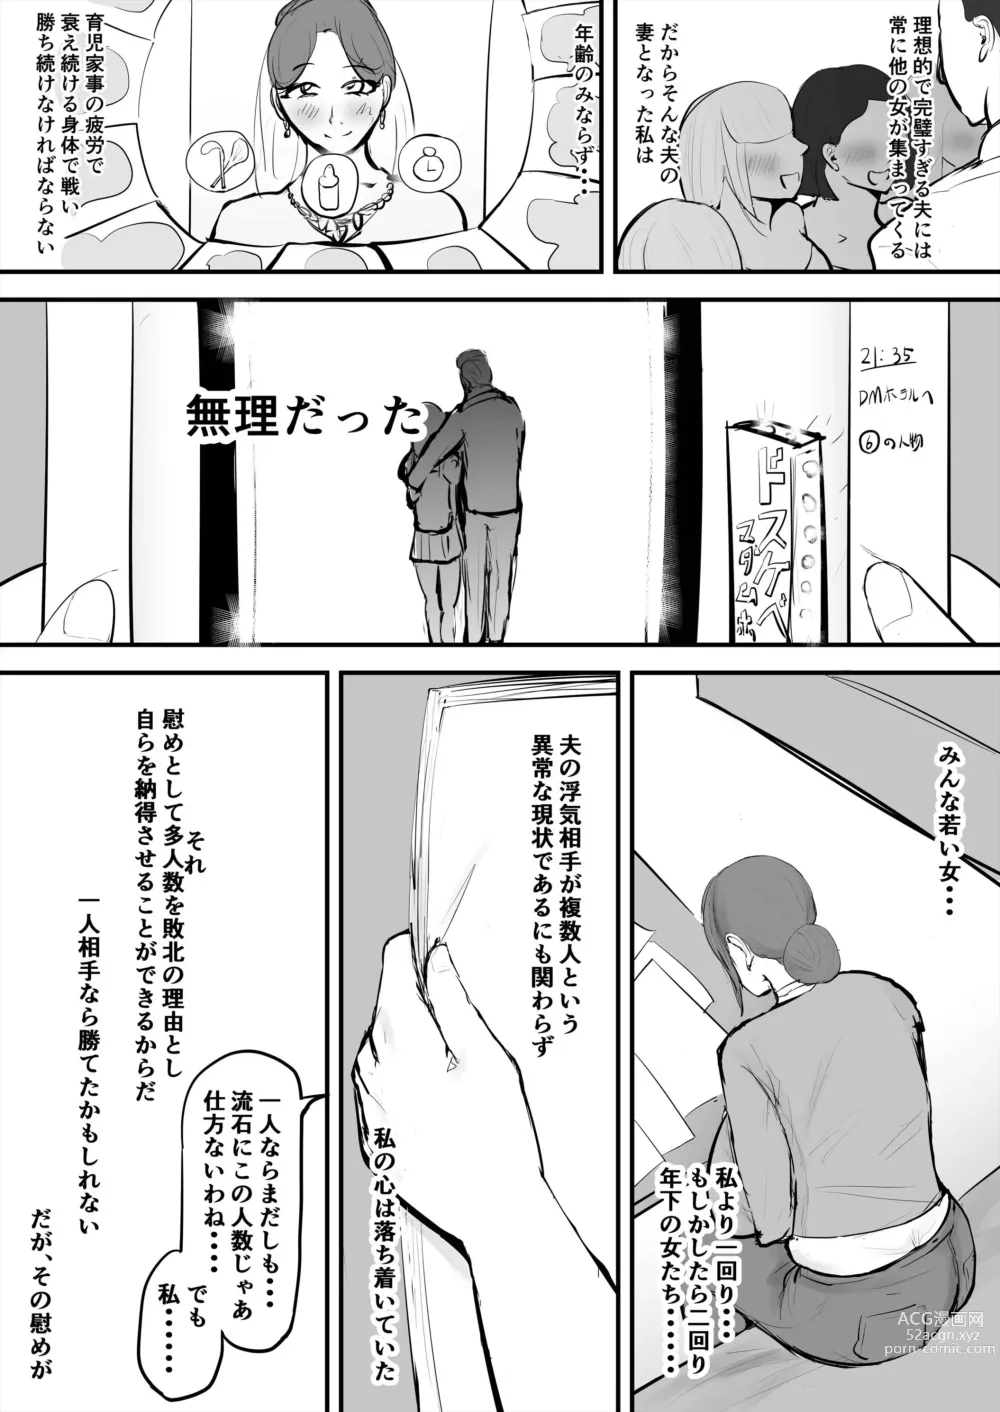 Page 4 of doujinshi Anata Ja Ikenaino Unubore Shufu Hen